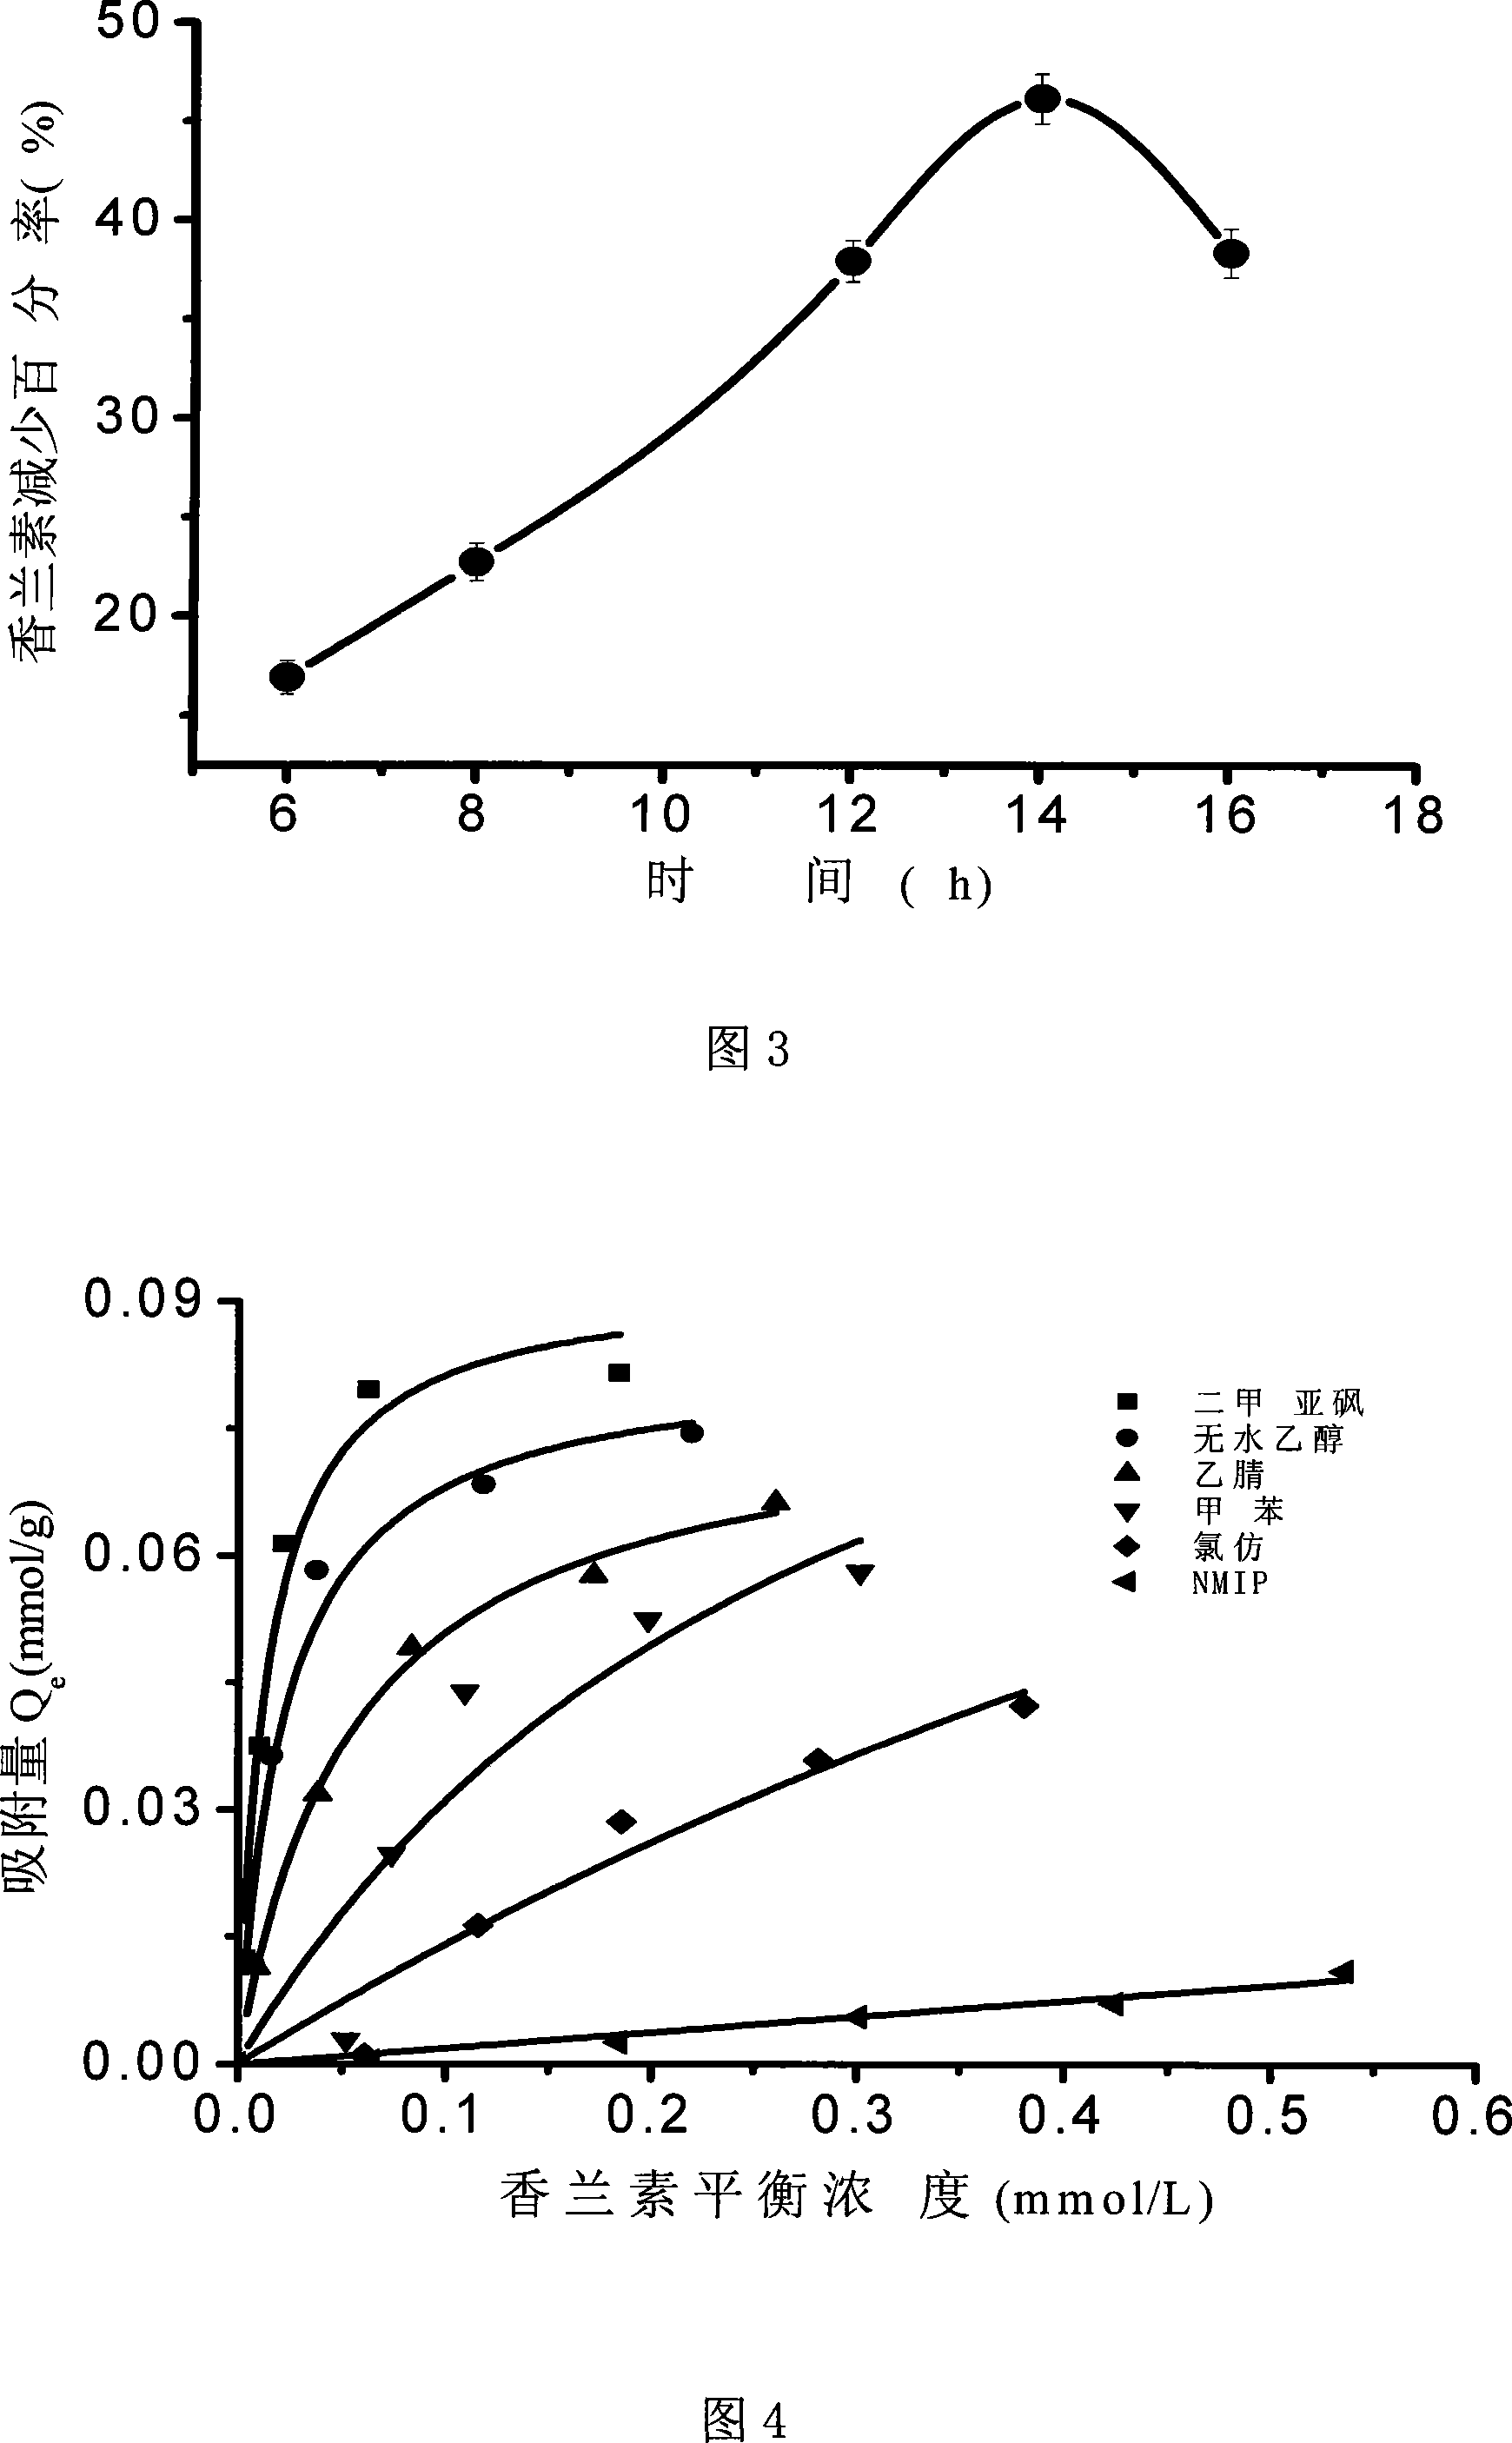 Method for preparing vanillin molecular engram polymer